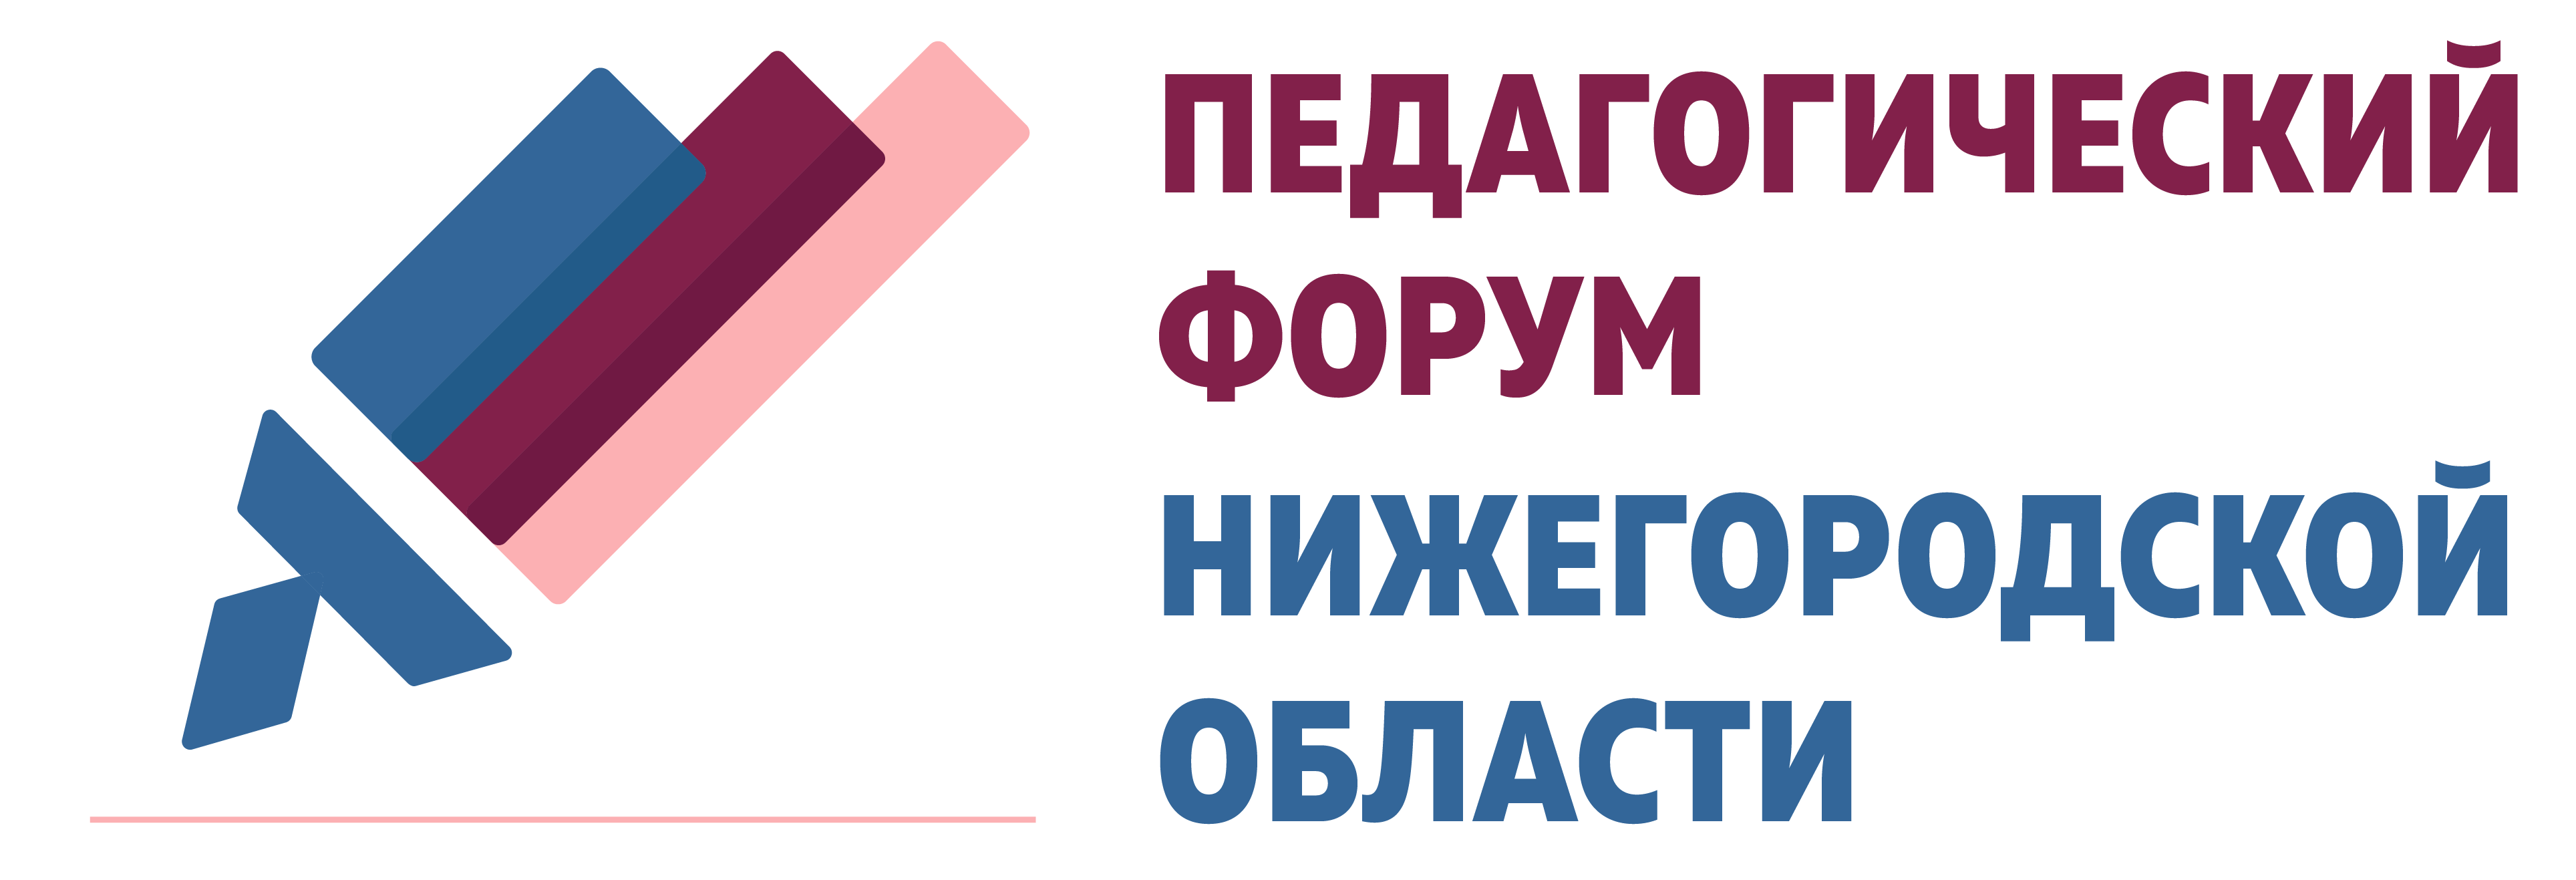 Педагогический форум Нижегородской области